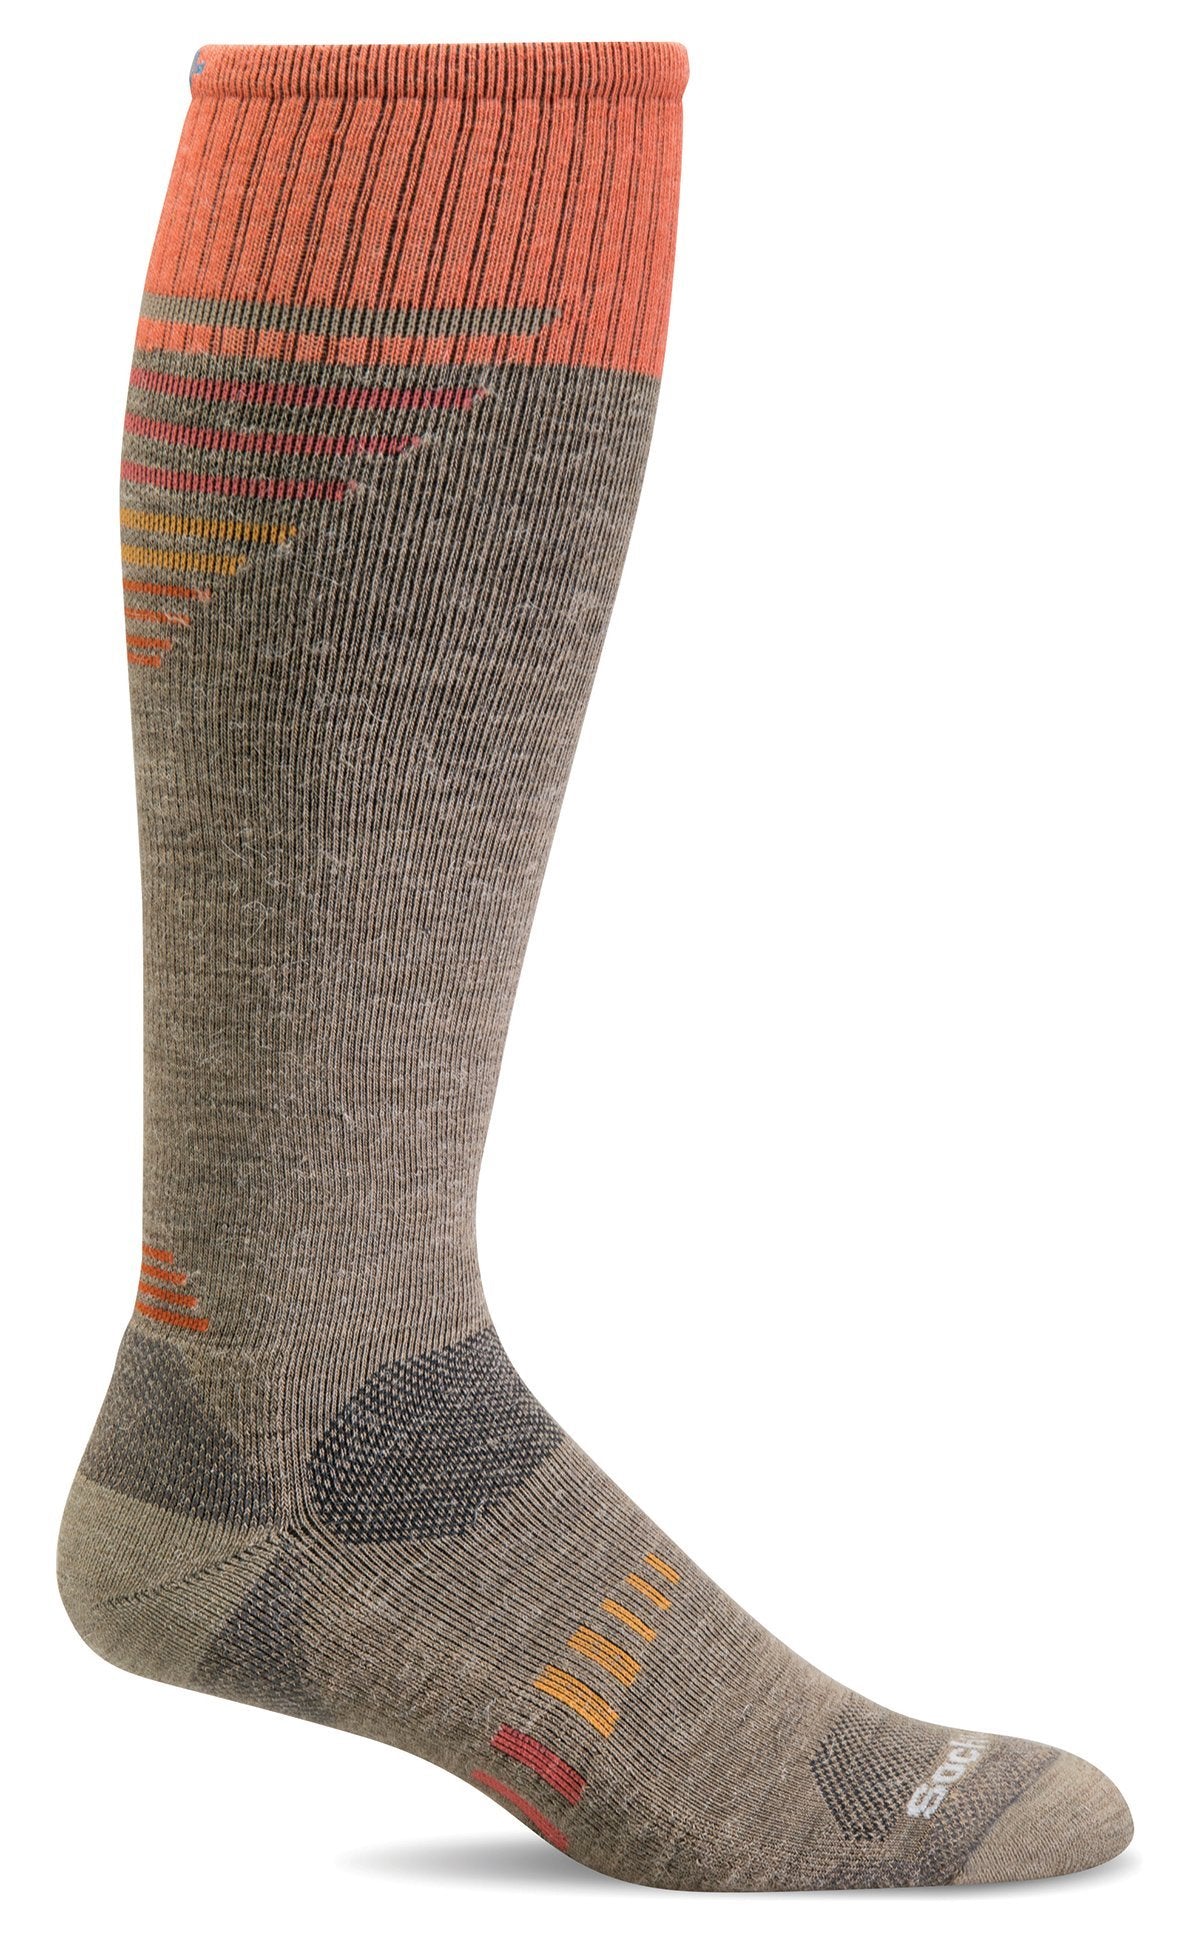 women's ascend ii knee high socks merino wool compression hiking socks in khaki